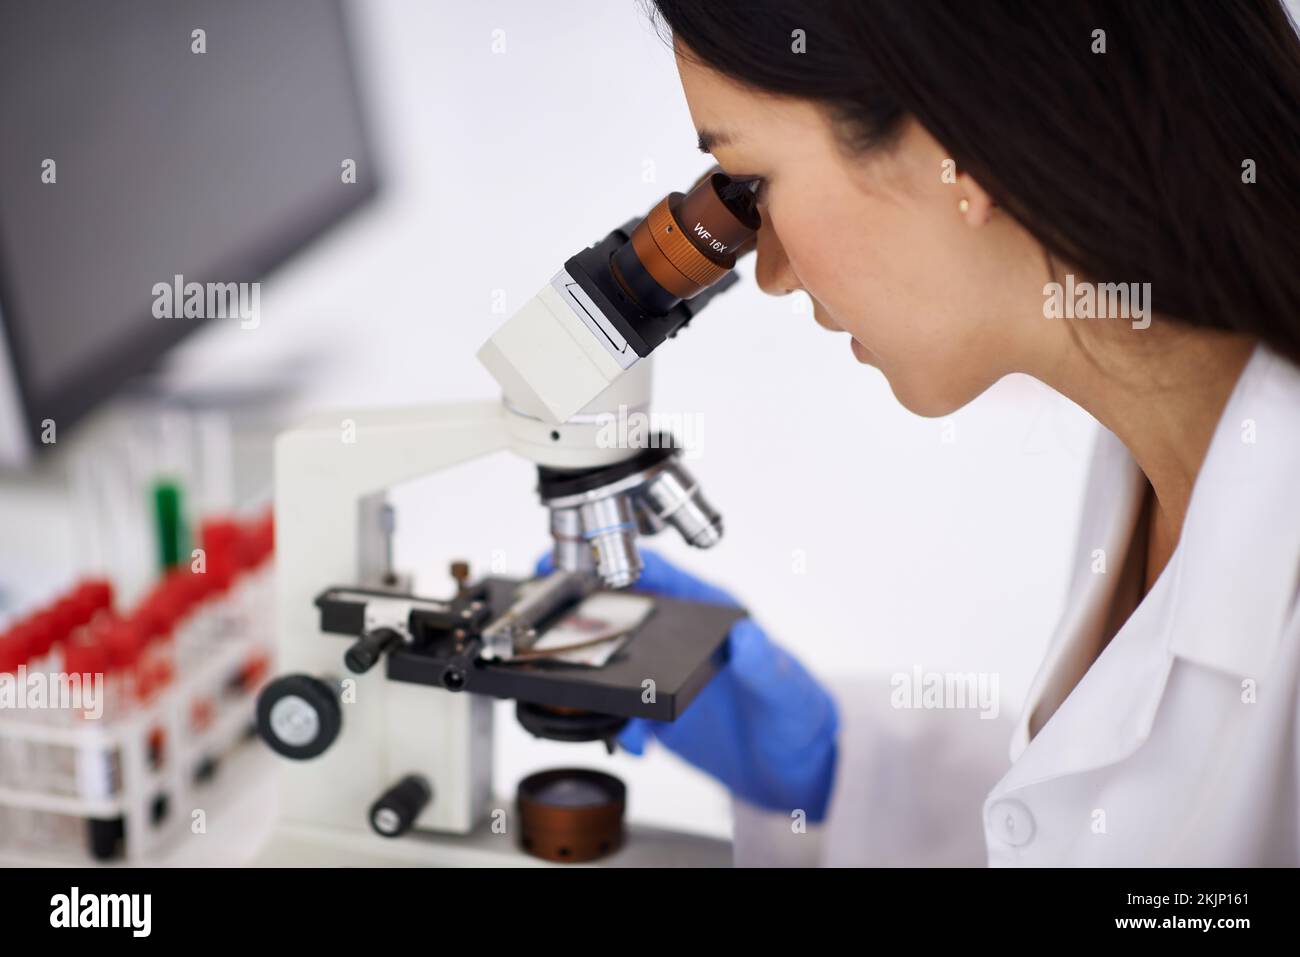 Sicher zu halten, welche mit Blut arbeiten. Profil einer Wissenschaftlerin, die eine Probe durch ein Mikroskop betrachtet. Stockfoto